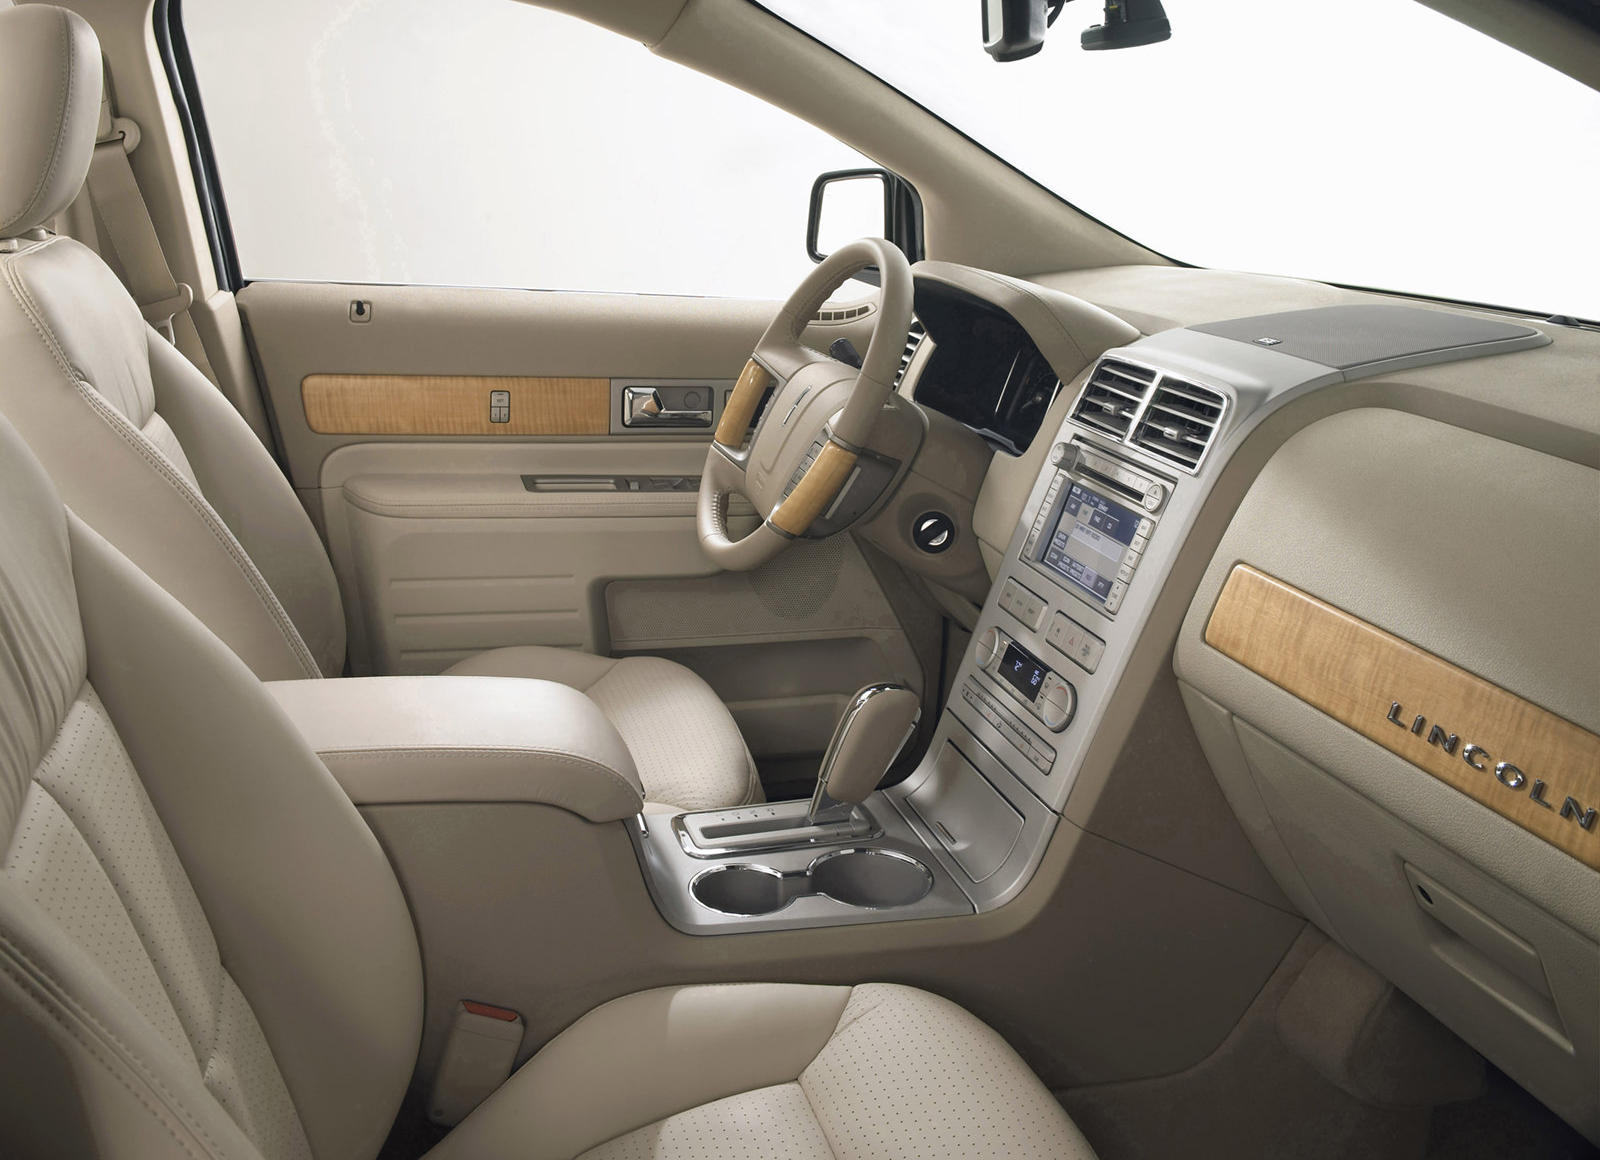 2008 Lincoln MKX Interior Photos | CarBuzz